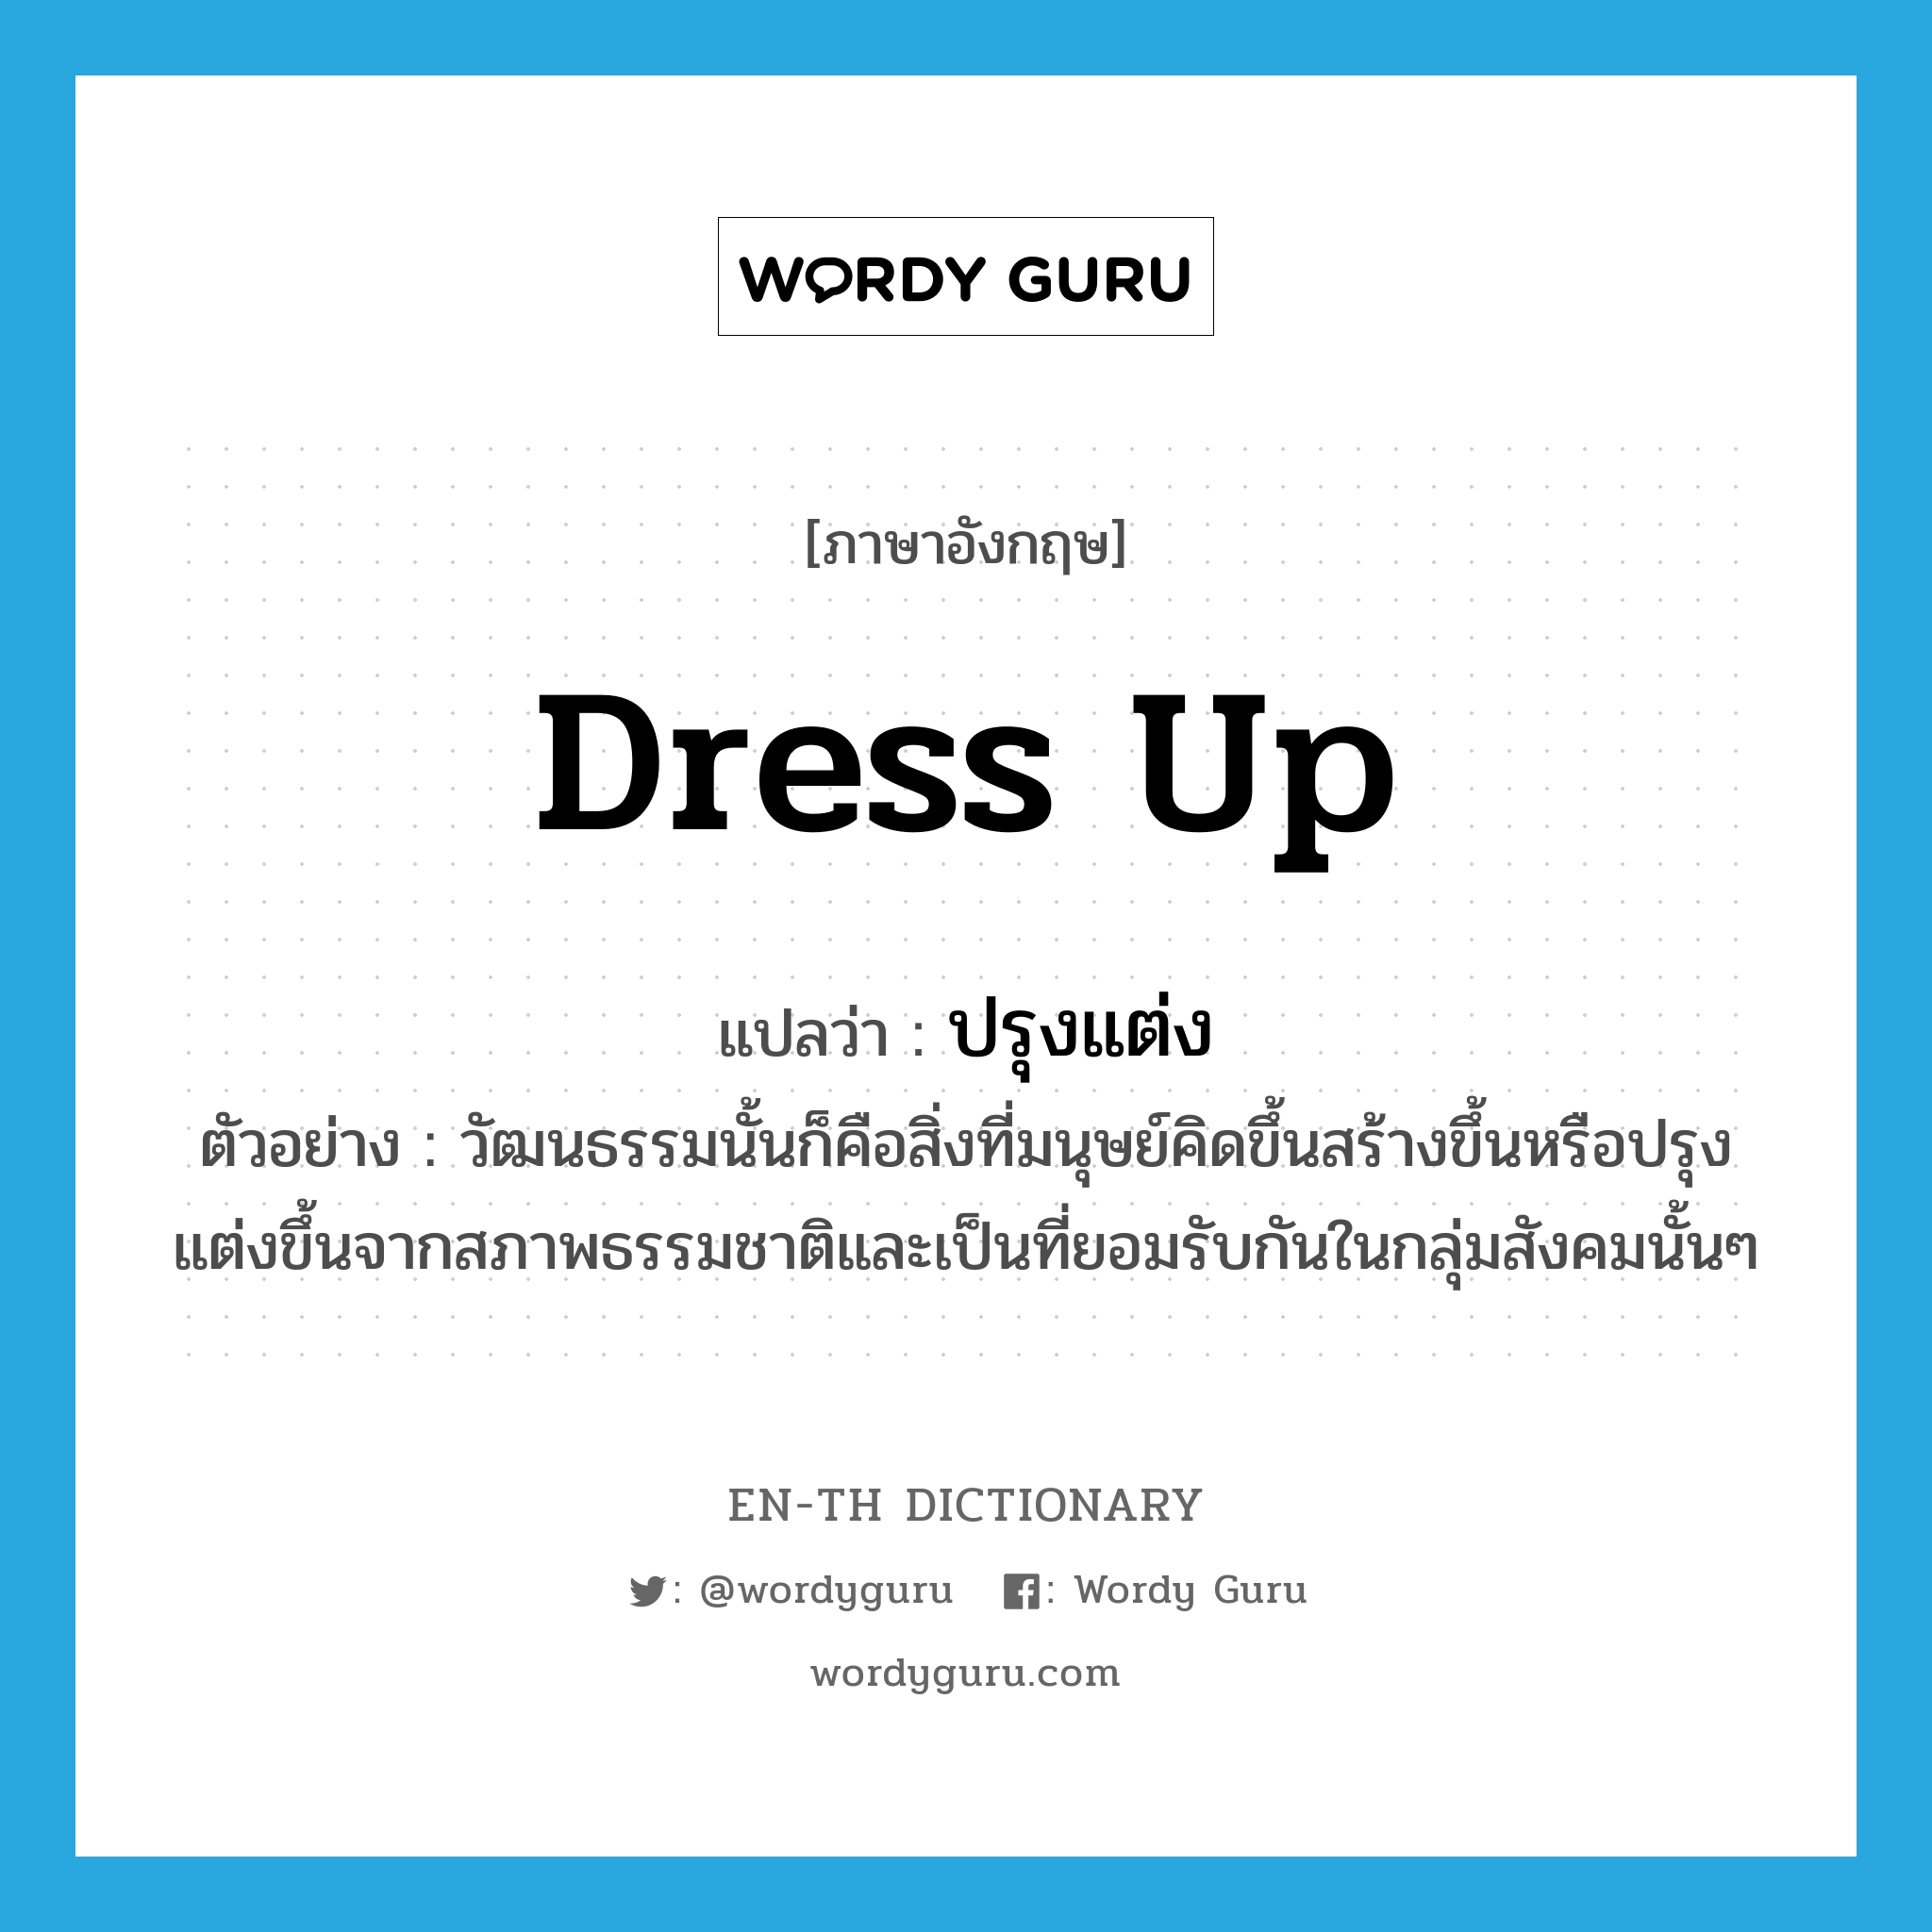 dress up แปลว่า?, คำศัพท์ภาษาอังกฤษ dress up แปลว่า ปรุงแต่ง ประเภท V ตัวอย่าง วัฒนธรรมนั้นก็คือสิ่งที่มนุษย์คิดขึ้นสร้างขึ้นหรือปรุงแต่งขึ้นจากสภาพธรรมชาติและเป็นที่ยอมรับกันในกลุ่มสังคมนั้นๆ หมวด V